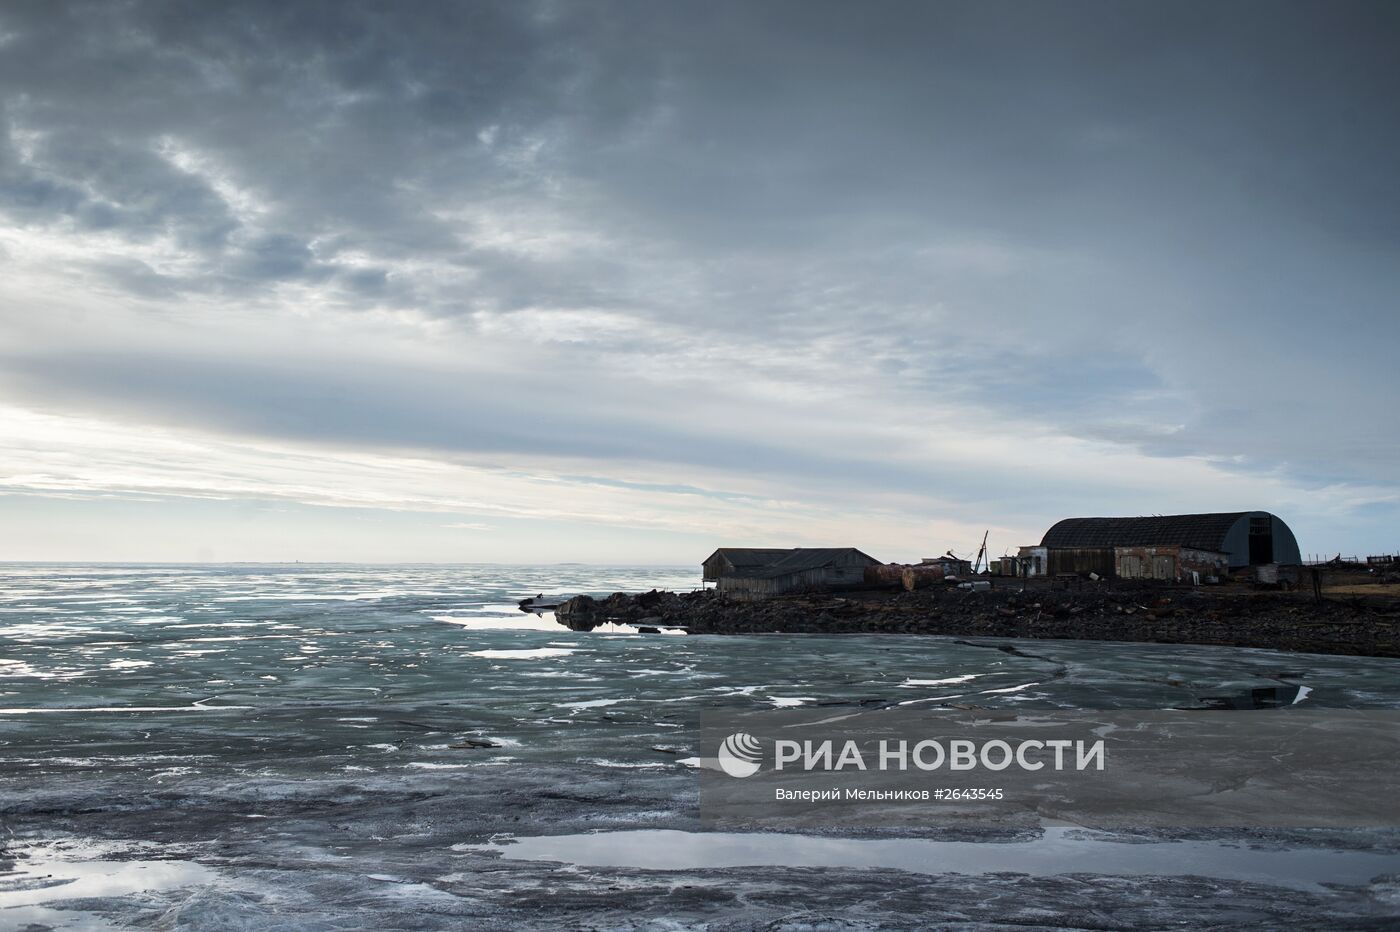 Арктическая экспедиция "Кара-зима 2015"